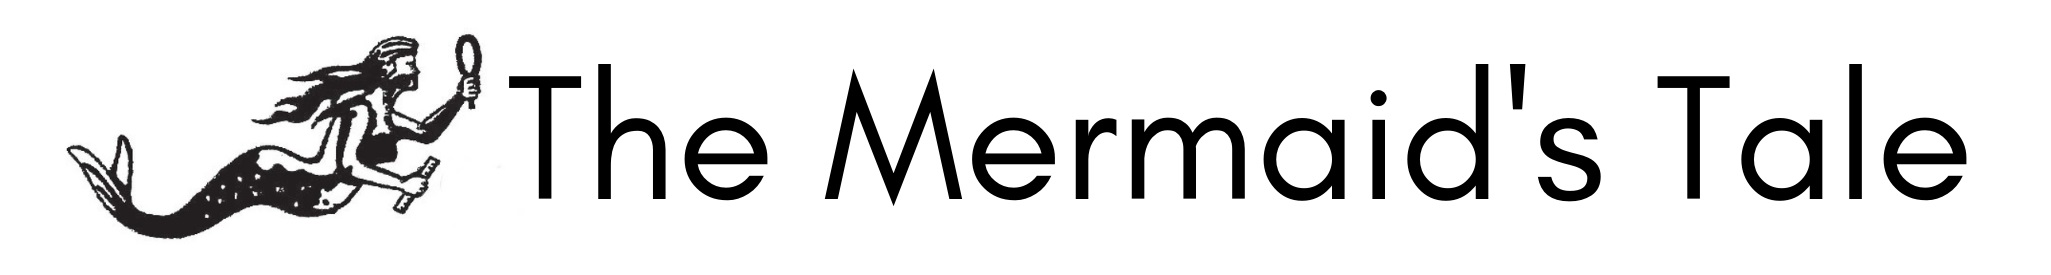 The Mermaids Tale logo